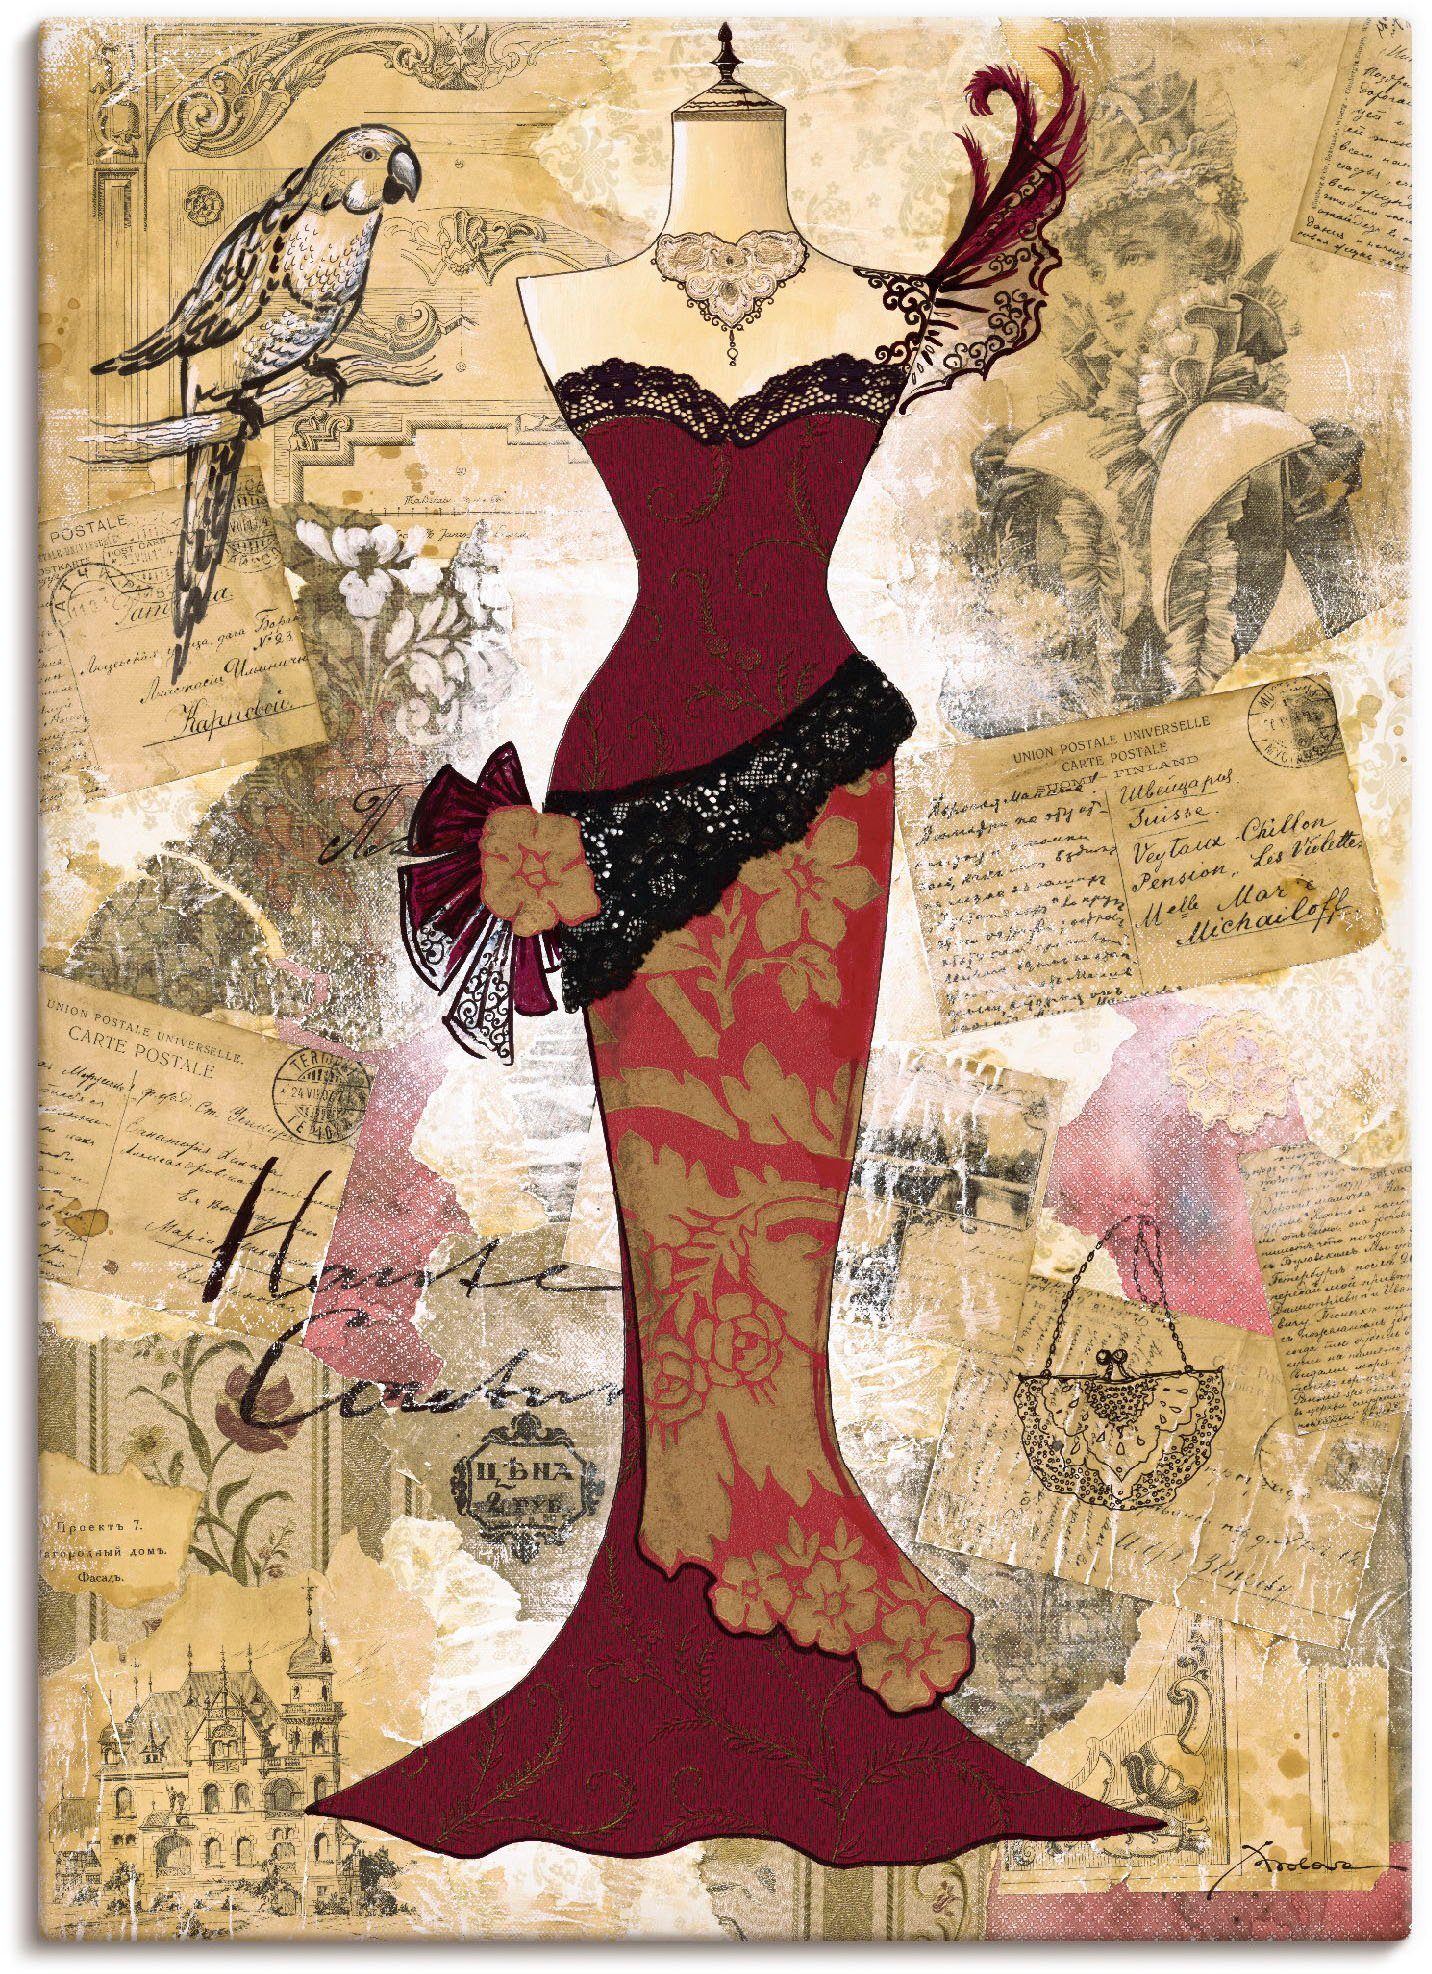 Artland Artprint Antieke jurk - collage in vele afmetingen & productsoorten - artprint van aluminium / artprint voor buiten, artprint op linnen, poster, muursticker / wandfolie ook